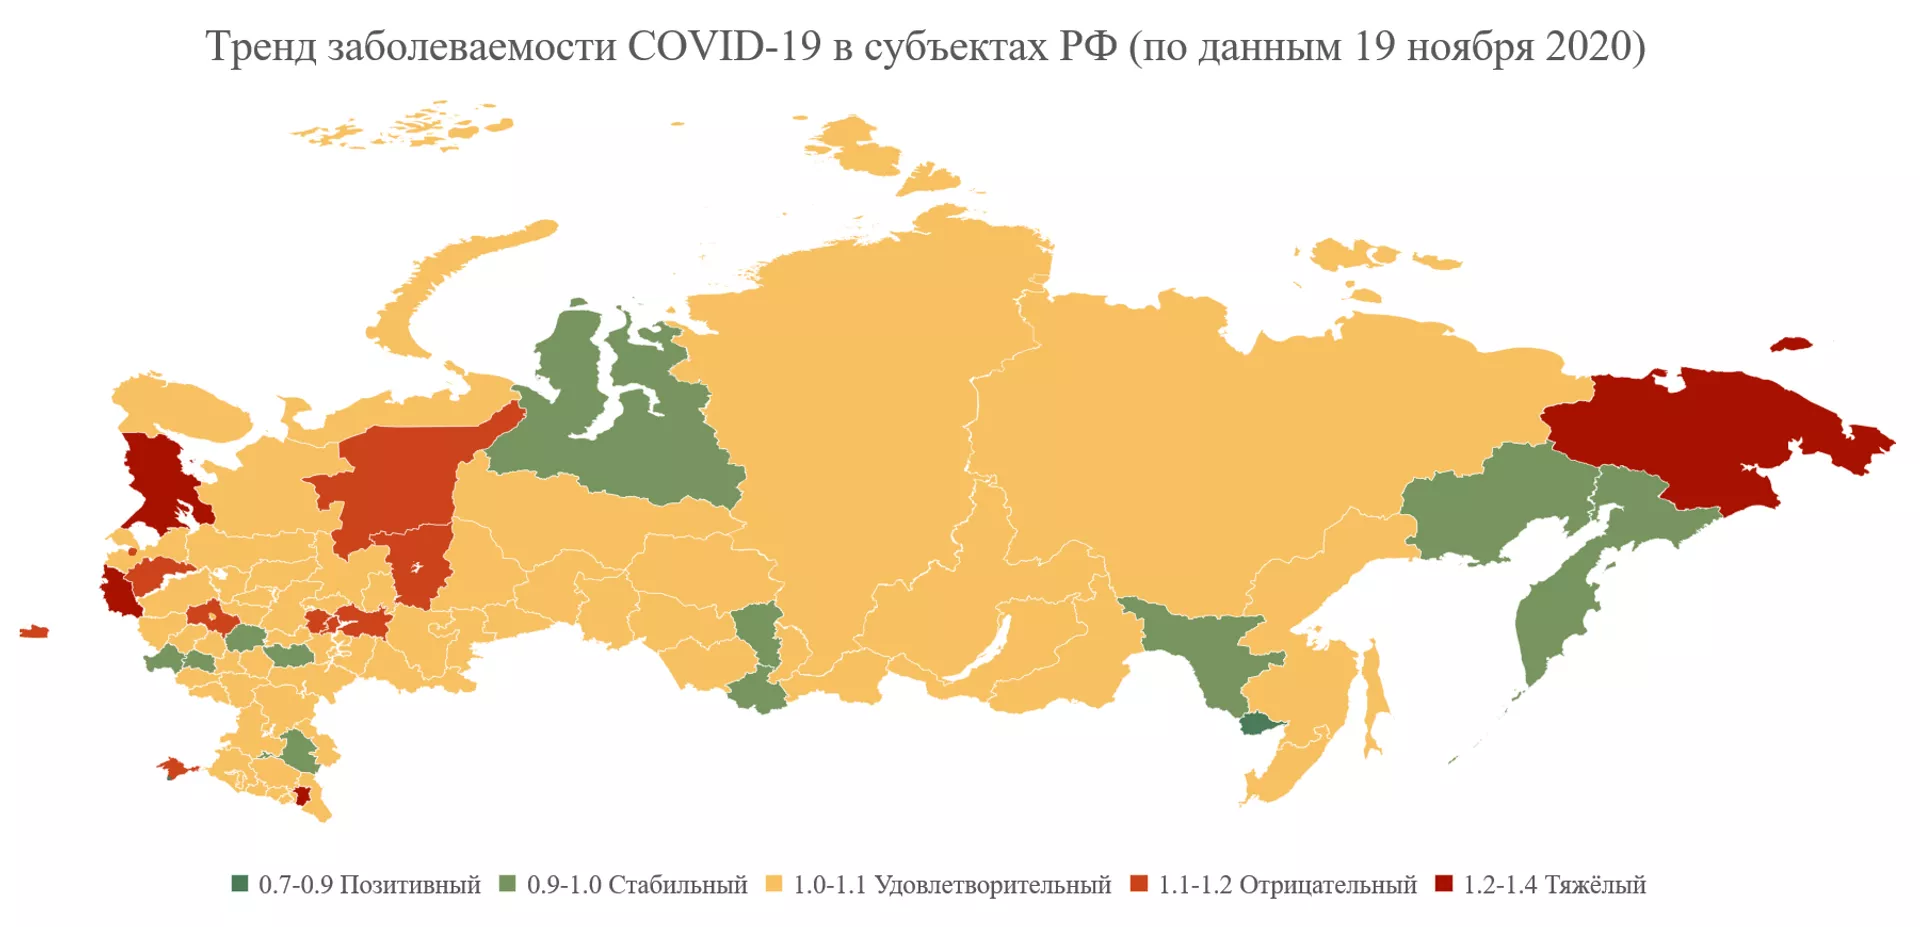 Когда начнётся спад заболеваемости COVID-19 в России: слово учёным